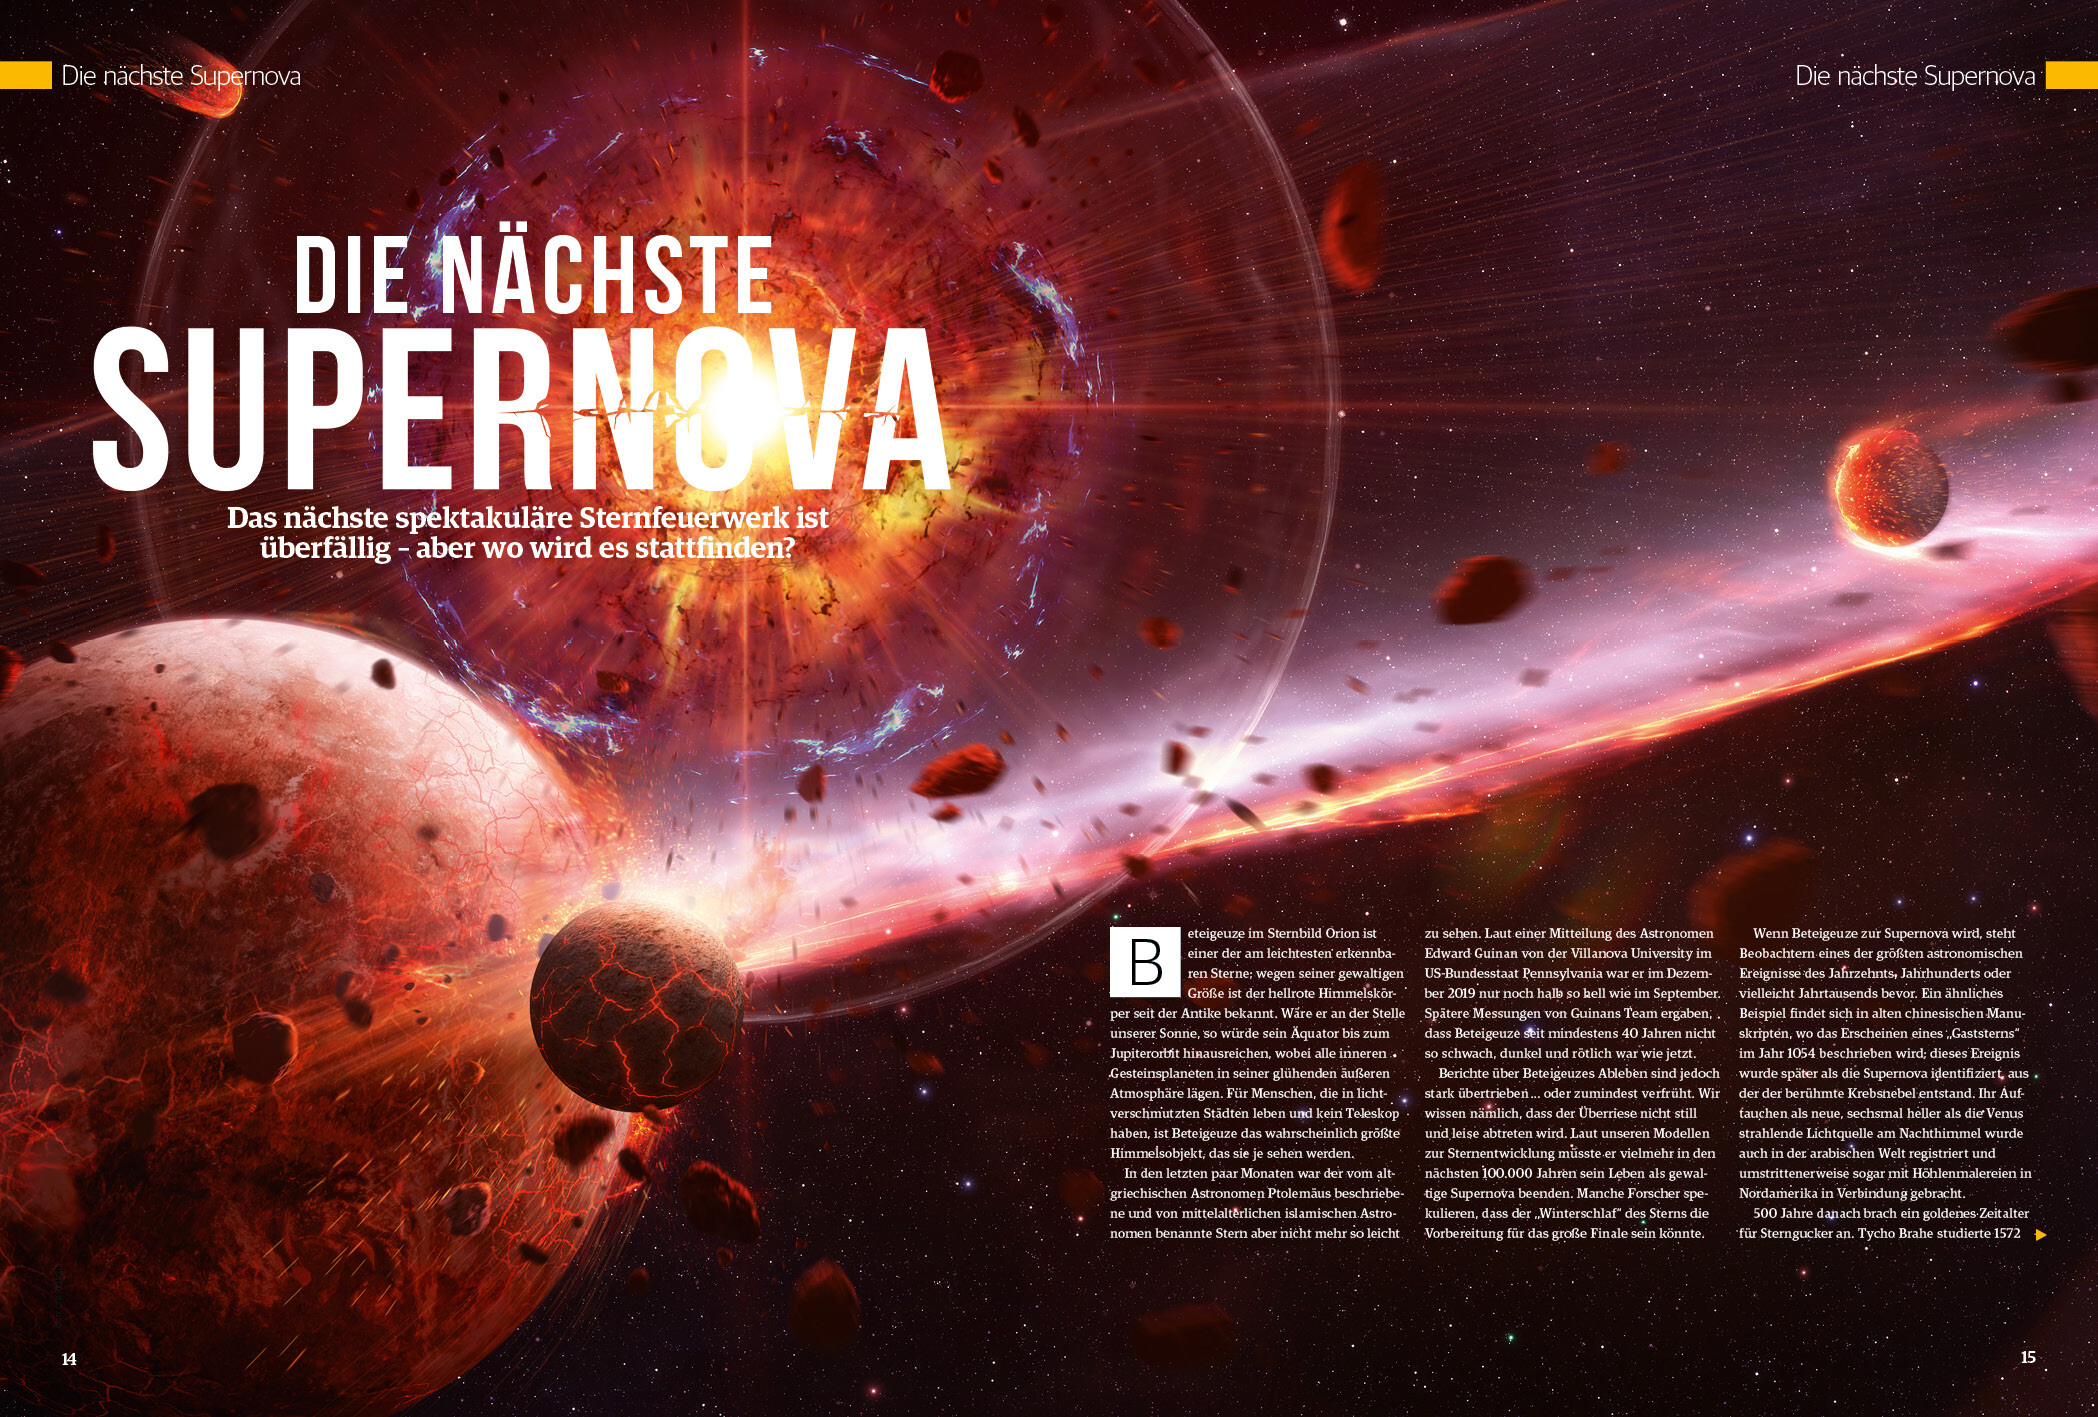 Space Weltraum Magazin 05/2020